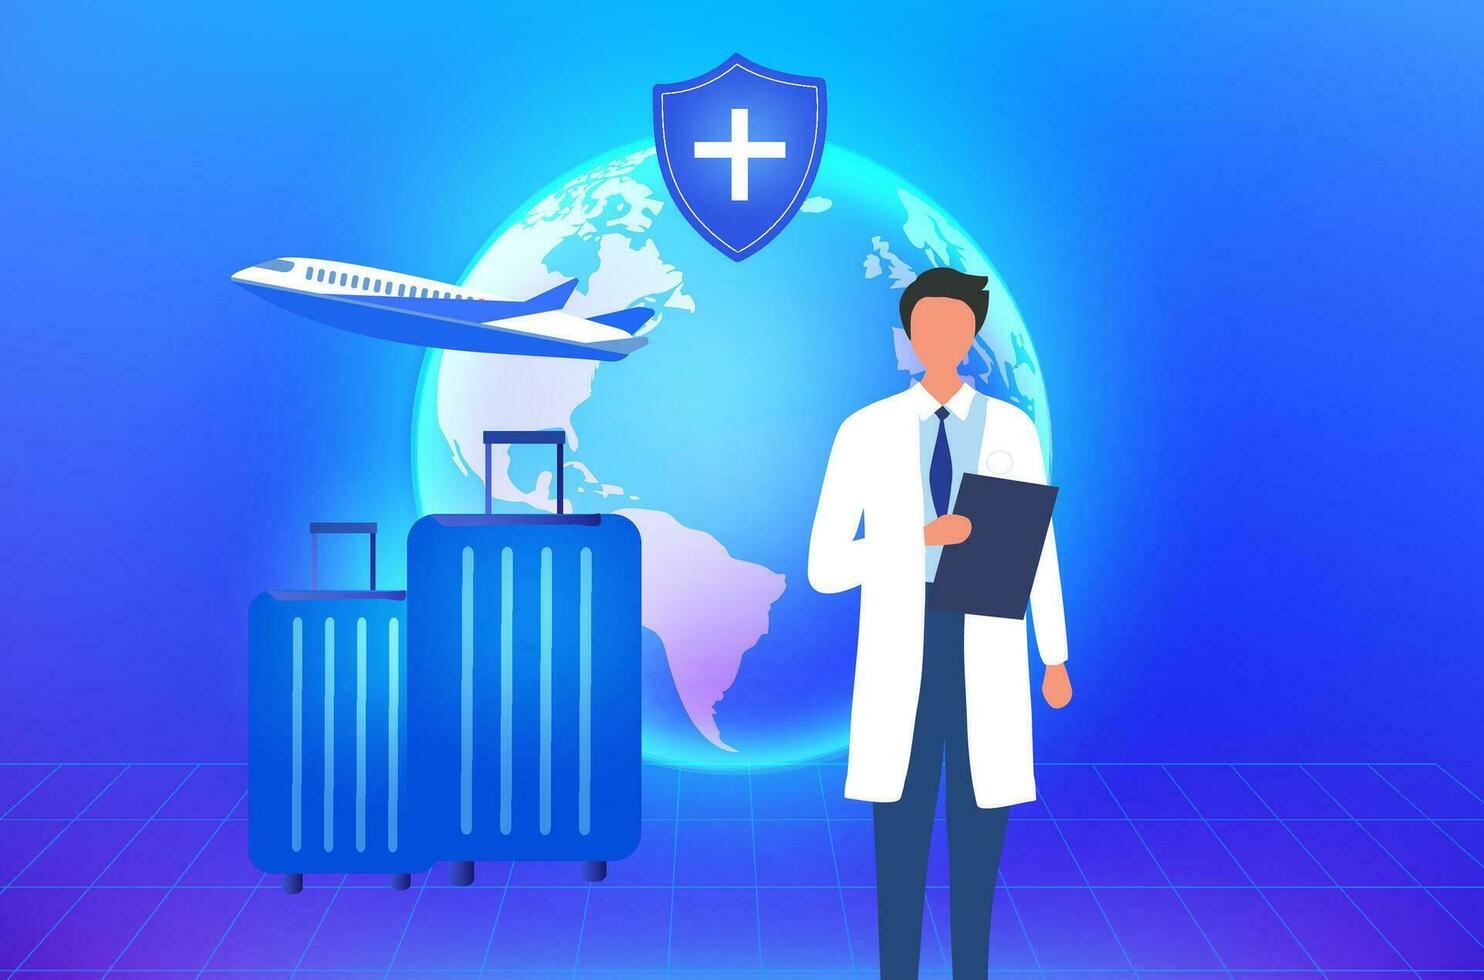 medizinisch Tourismus Bedienung Konzept, Arzt mit medizinisch Versicherung Schutz Schild, herzlich willkommen Tourist Passagier von global Netzwerk. vektor